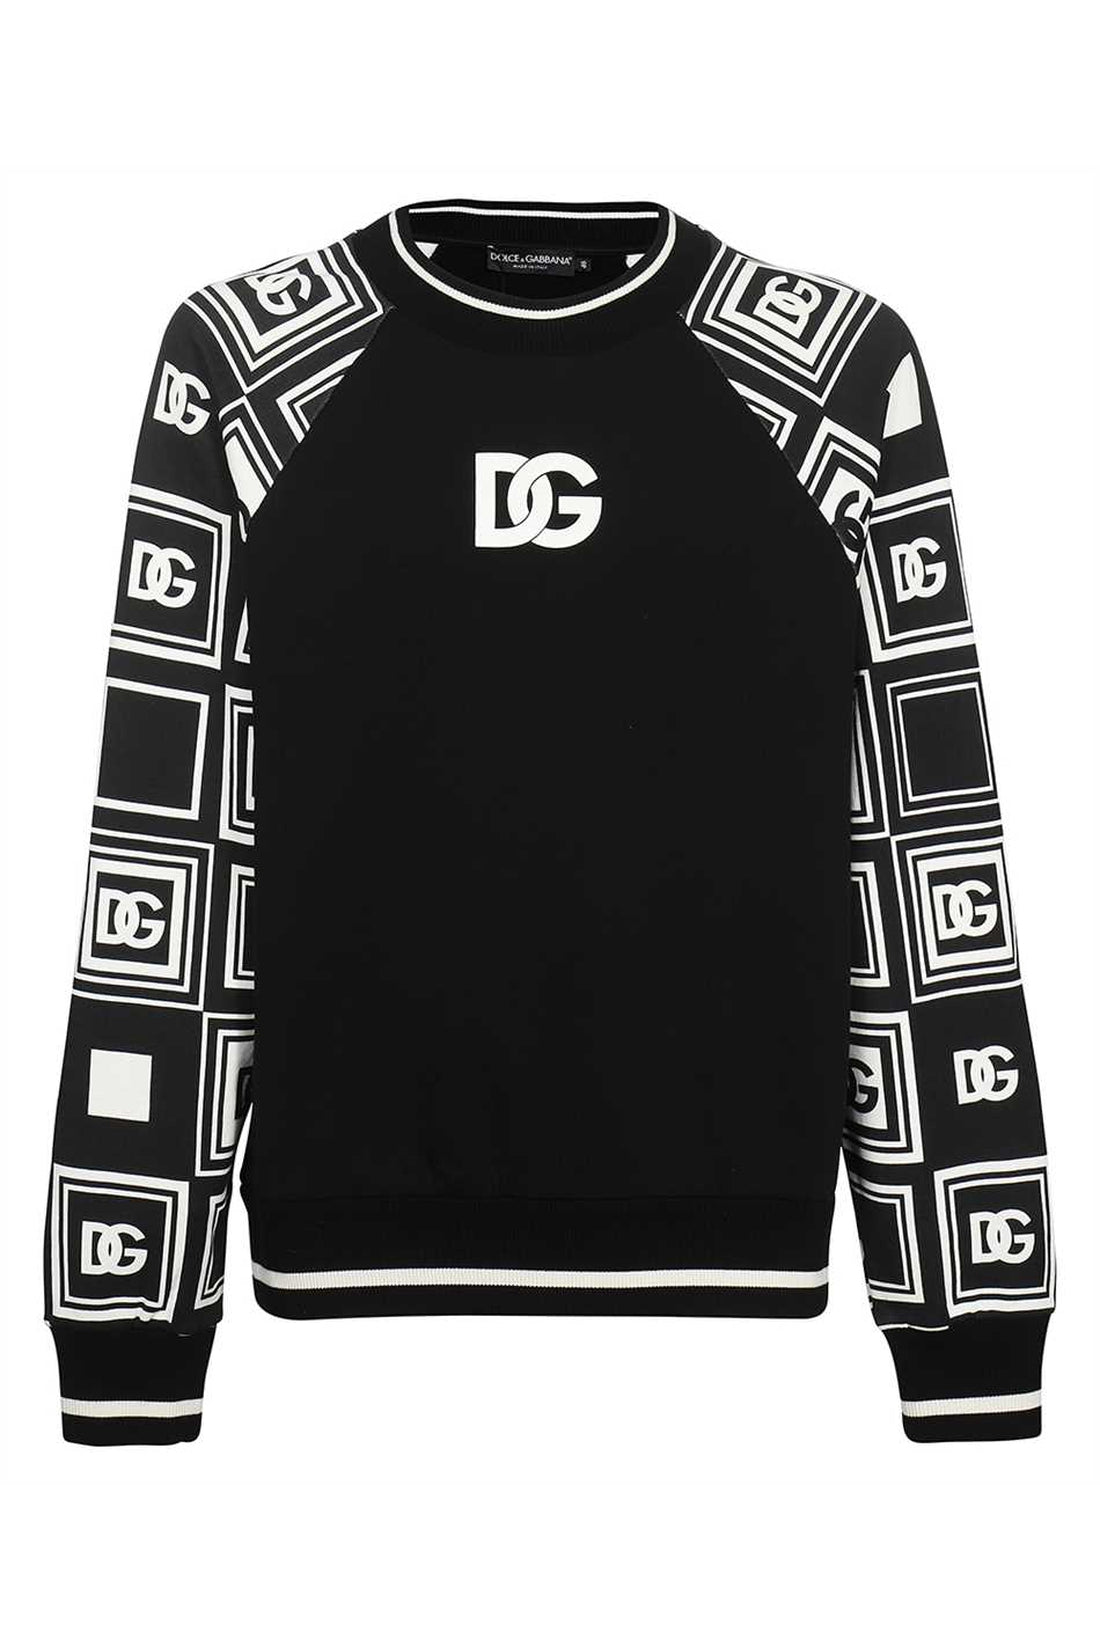 Dolce & Gabbana-OUTLET-SALE-Logo detail cotton sweatshirt-ARCHIVIST